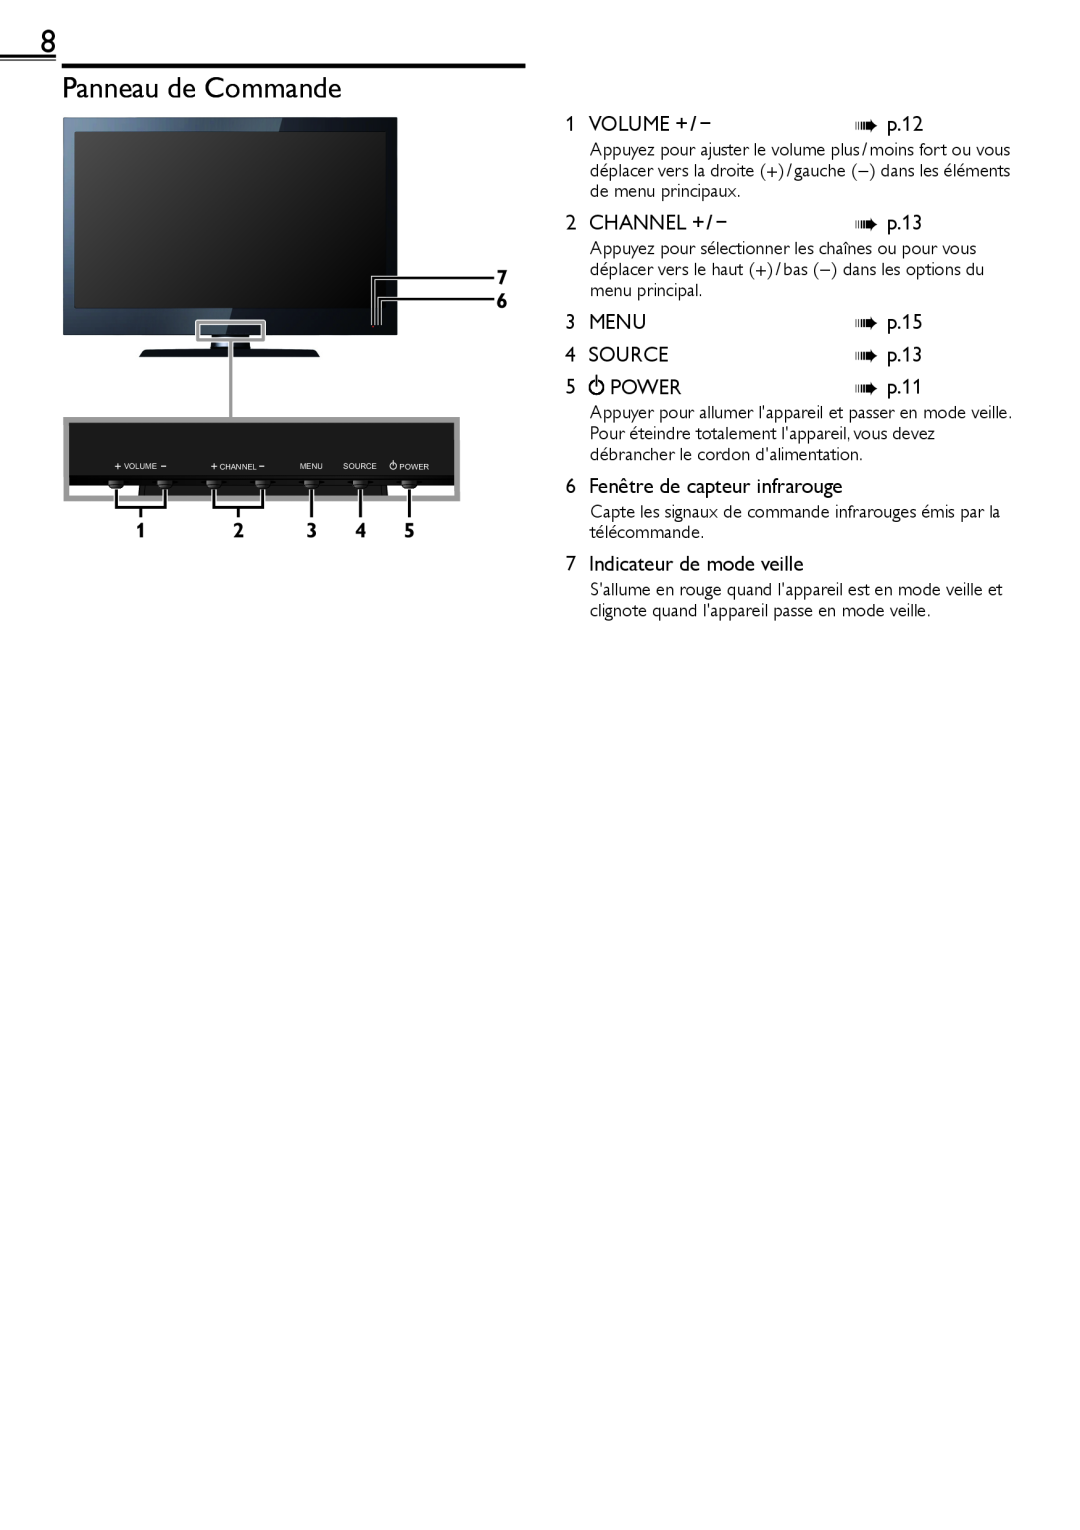 Sylvania LC320SS2 Panneau de Commande, Volume +, Channel +, Power, 6 Fenêtre de capteur infrarouge, Menu, Source 